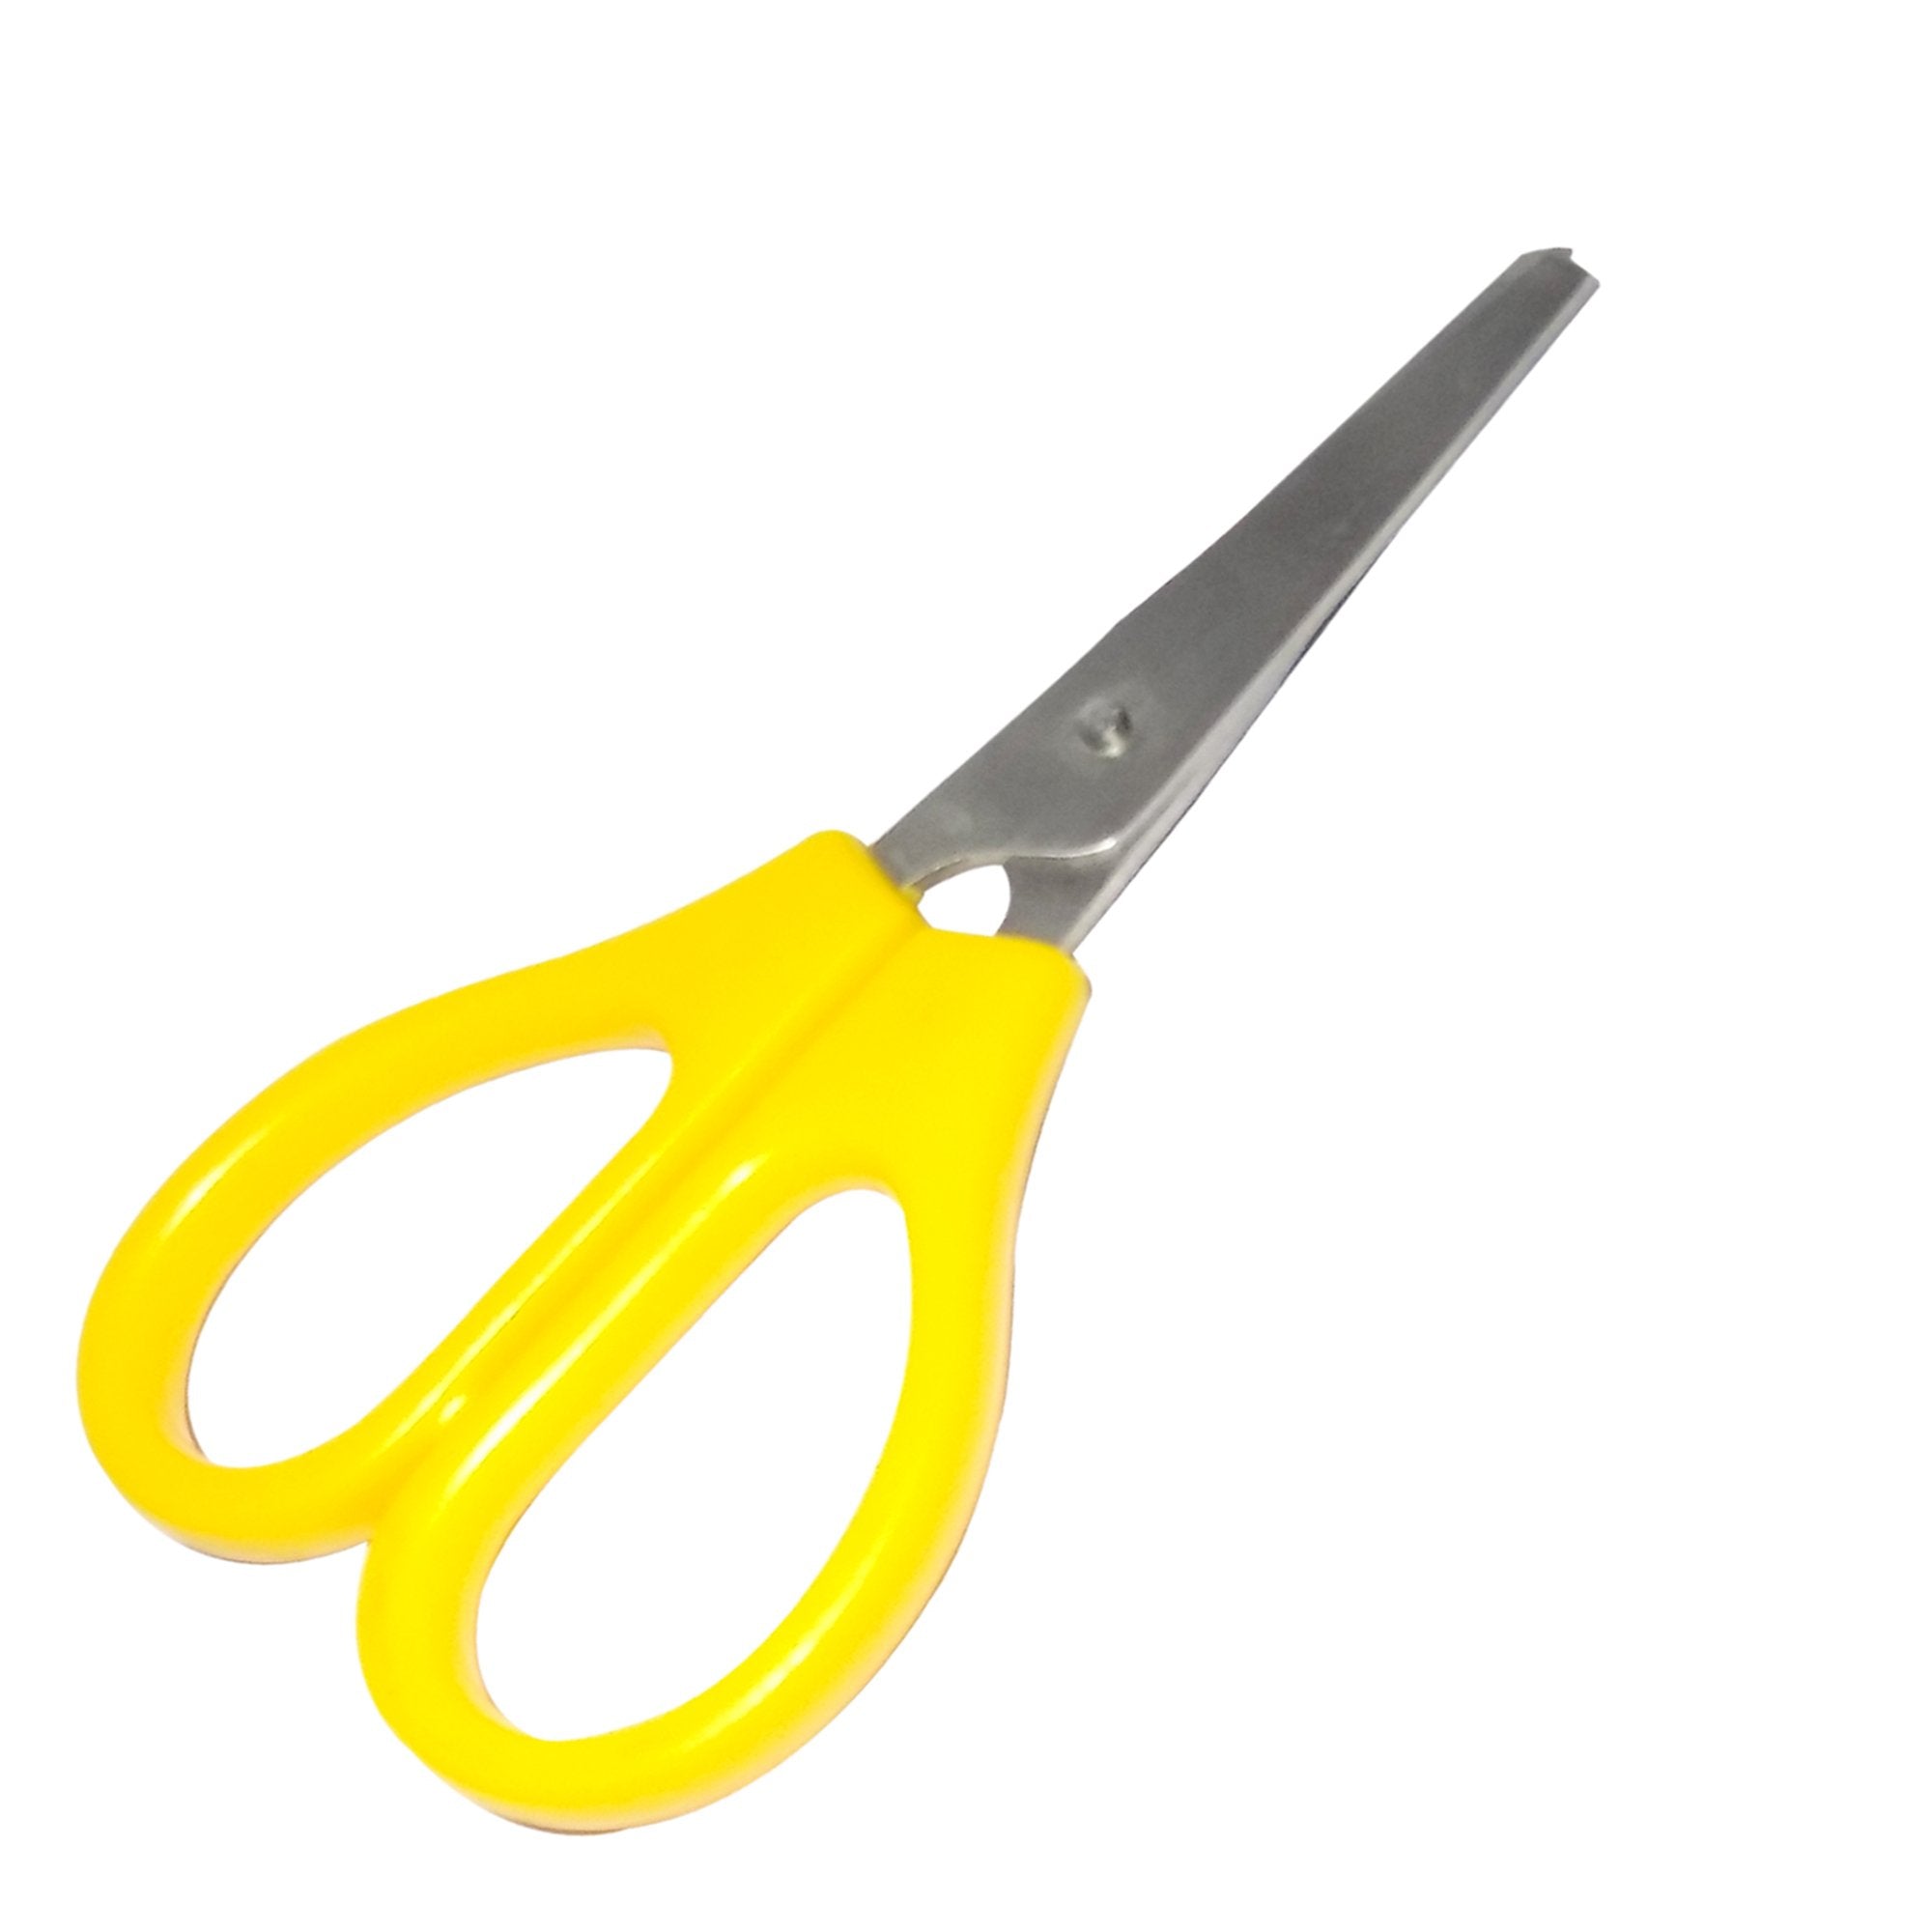 7405 multipurpose household mini scissor